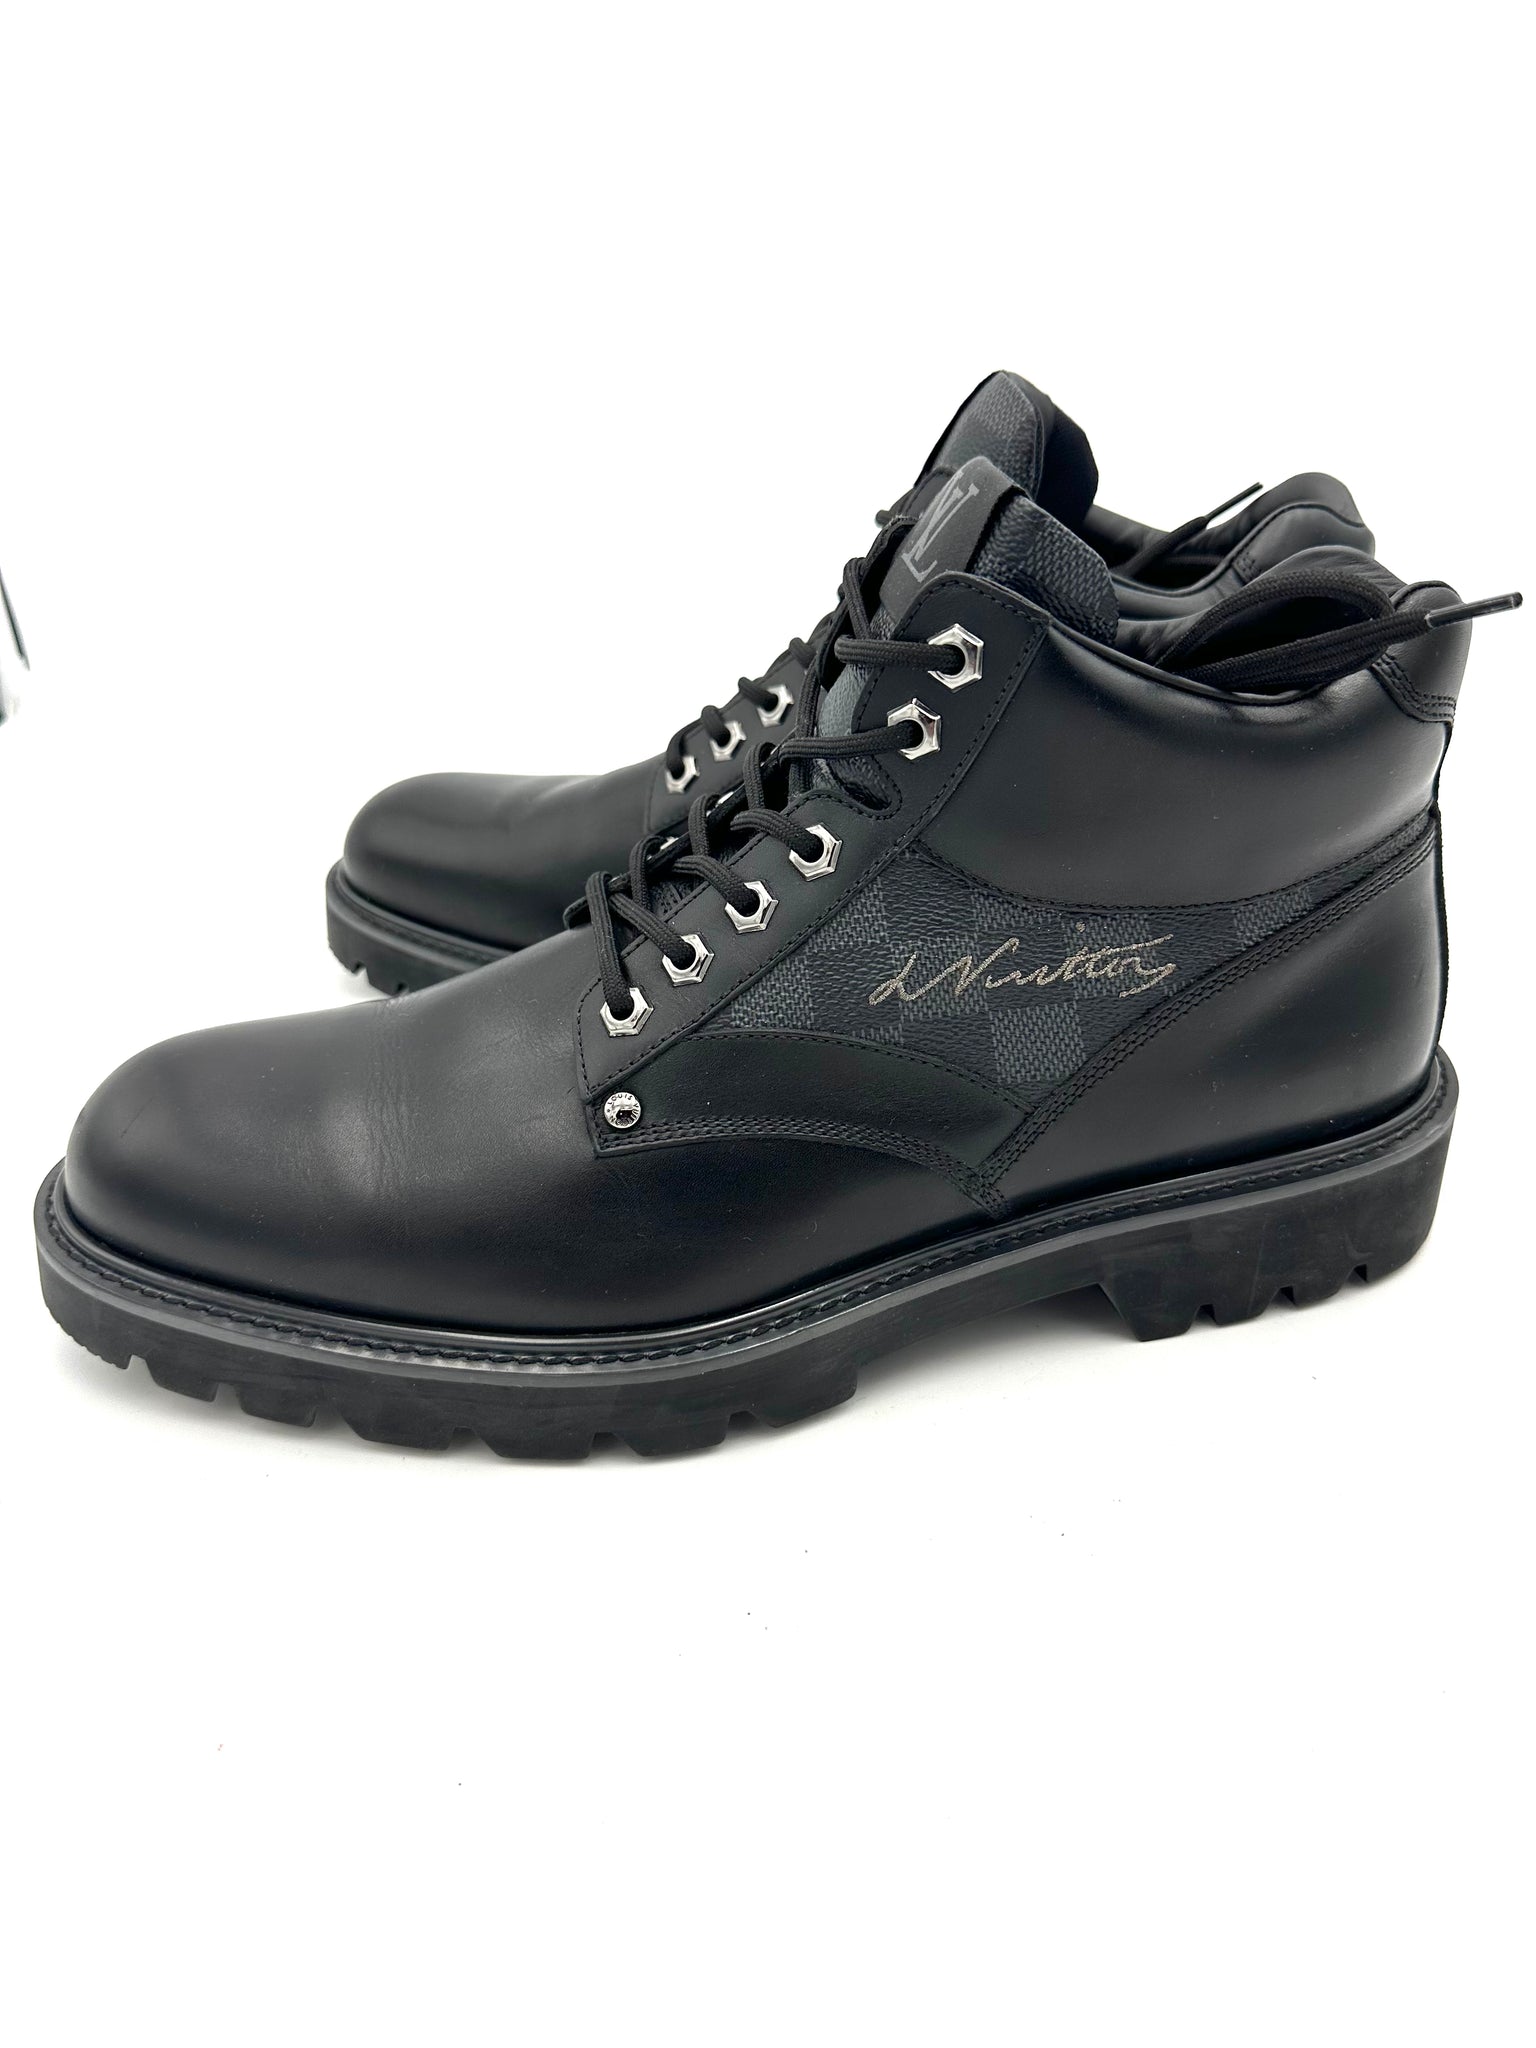 Louis Vuitton Monogram Mens Outdoor Boots, Beige, 09.0